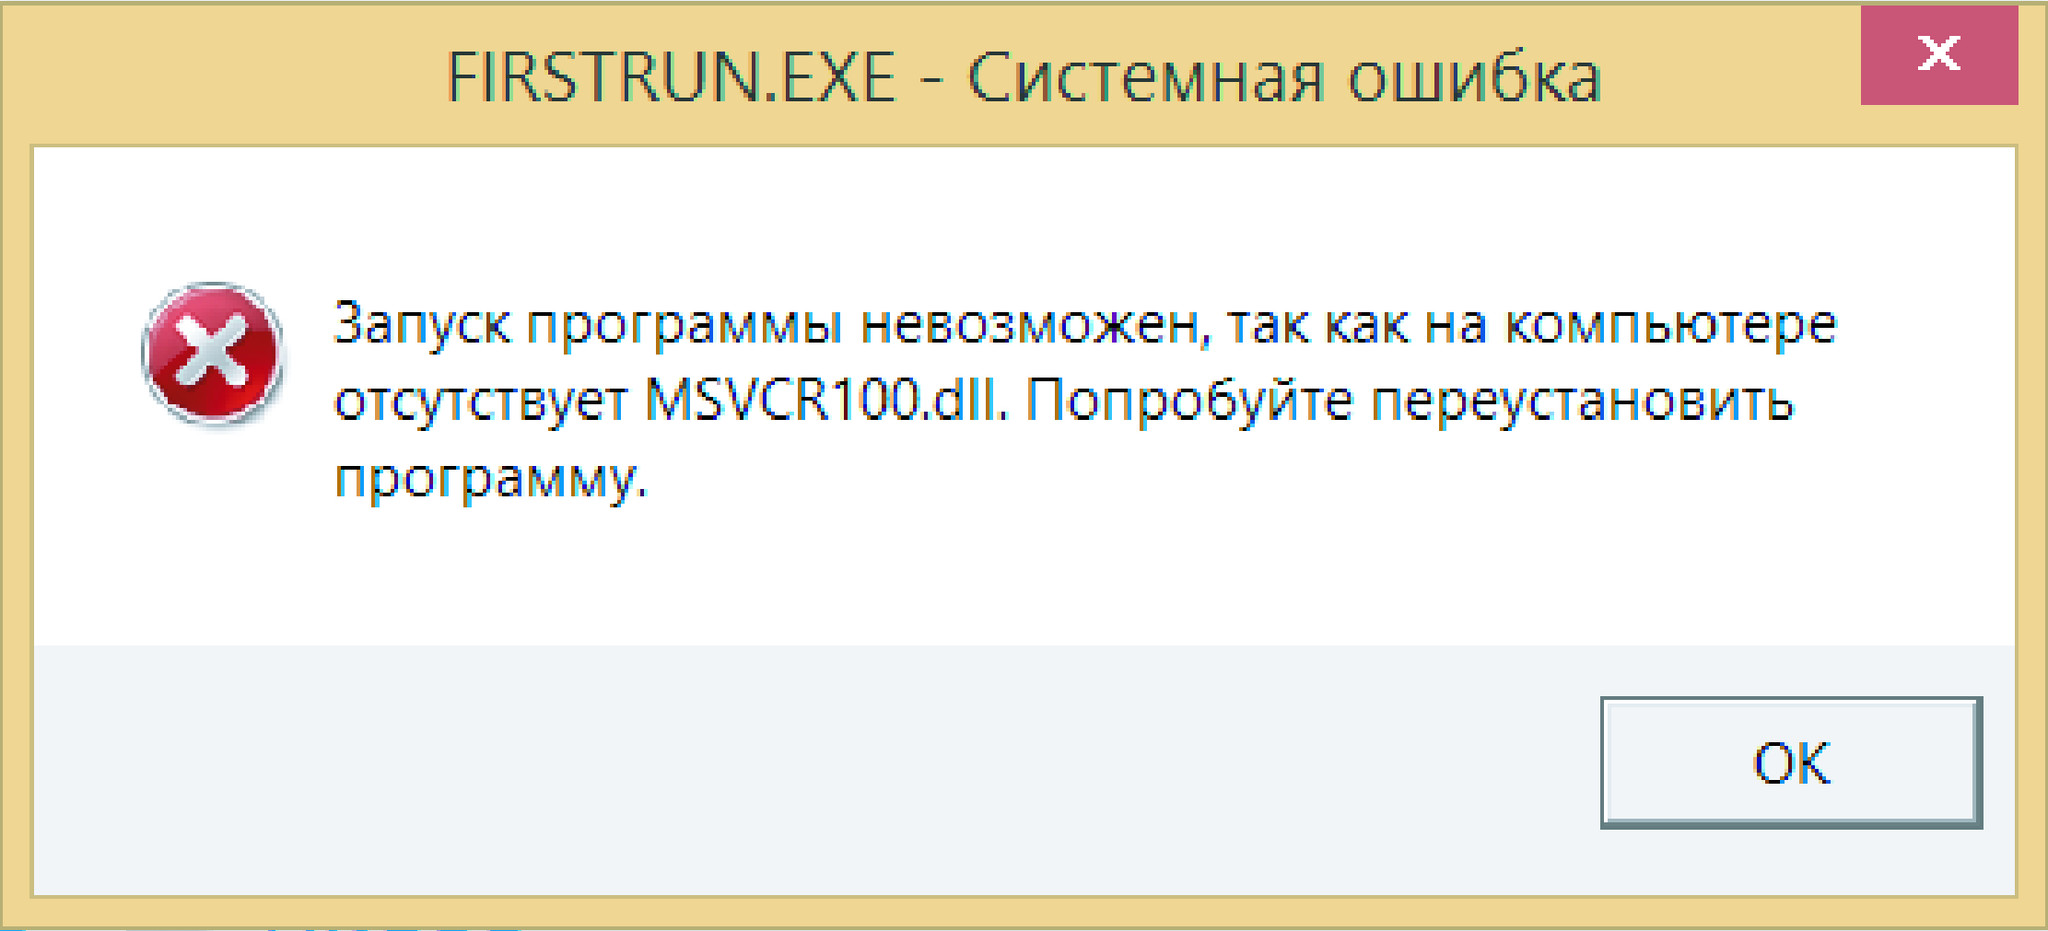 Гуди ошибка. Ошибка msvcr100.dll. Отсутствует файл dll. Запуск программы невозможен отсутствует msvcr100 dll. Запуск программы.